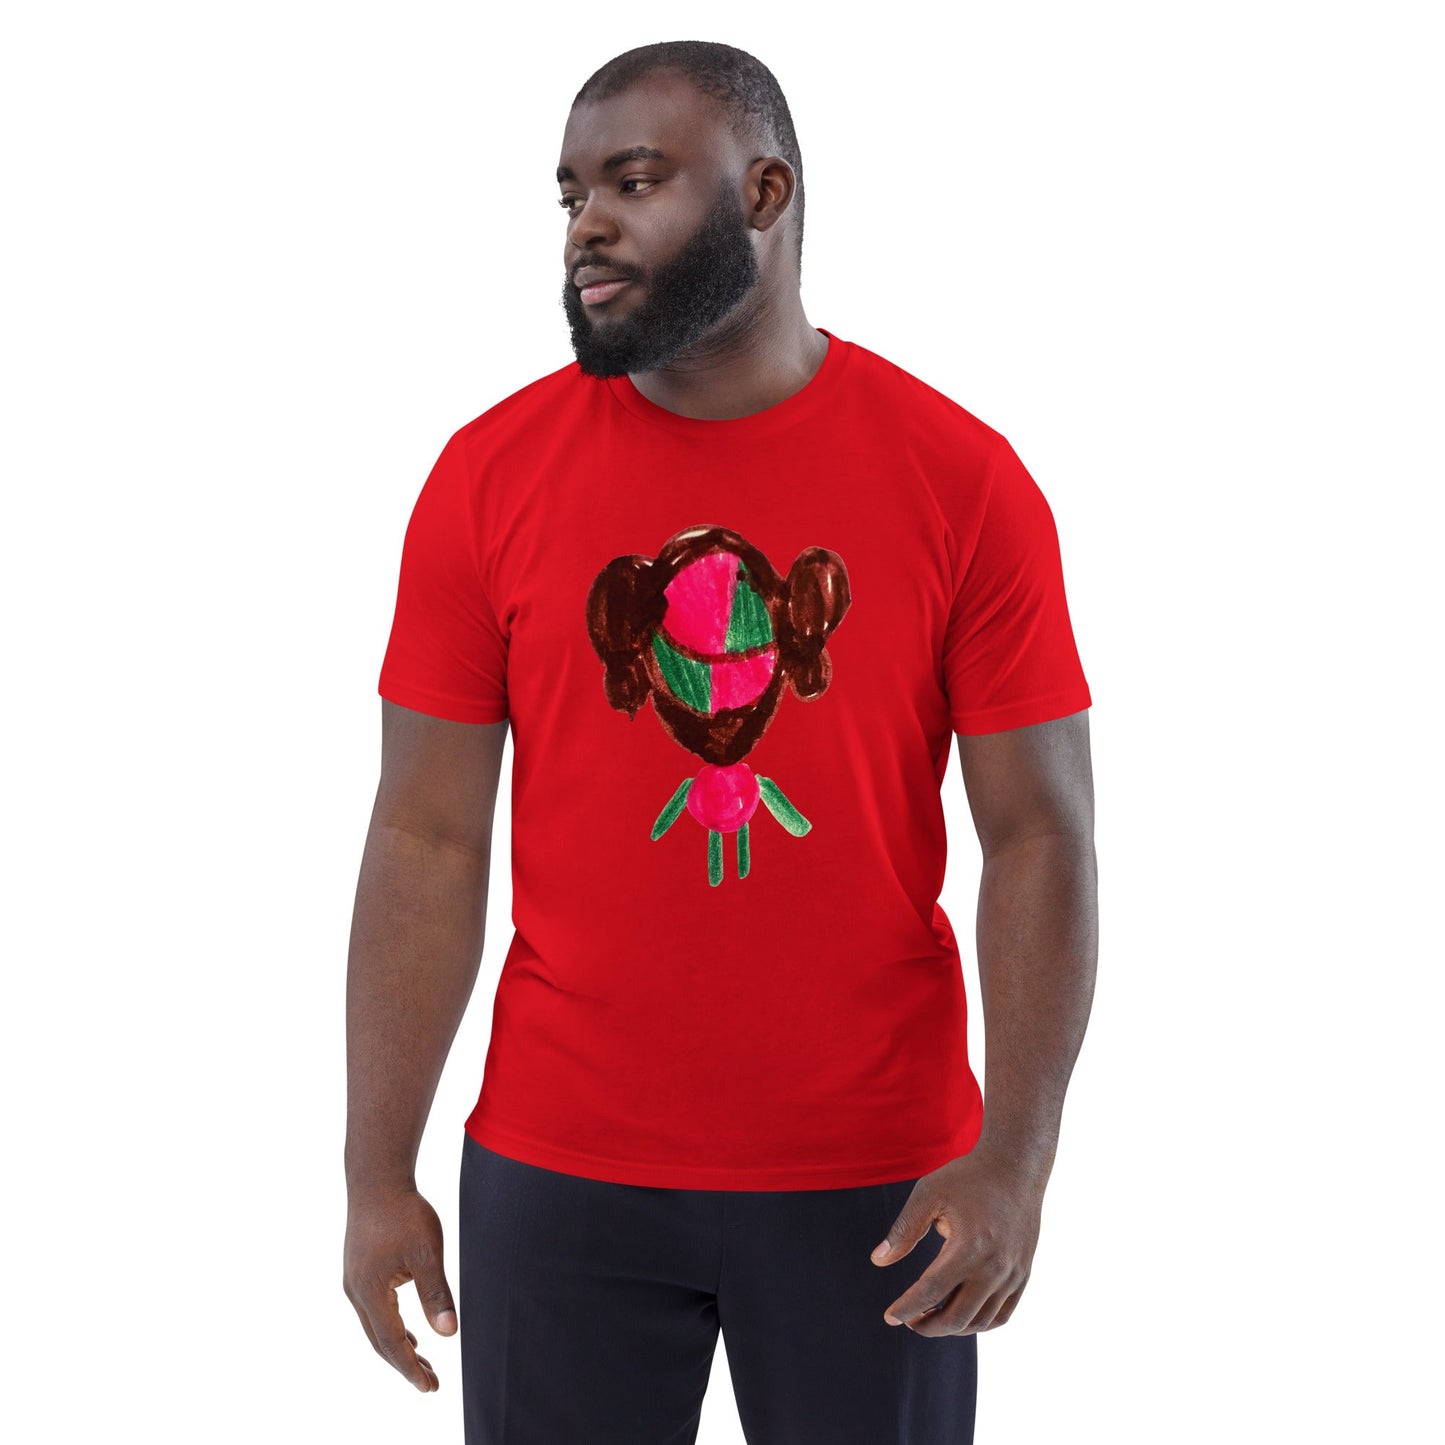 THING ORGANIC COTTON WEARABLE ART T-SHIRT-Wearable art t-shirt-Red-S-mysticalcherry